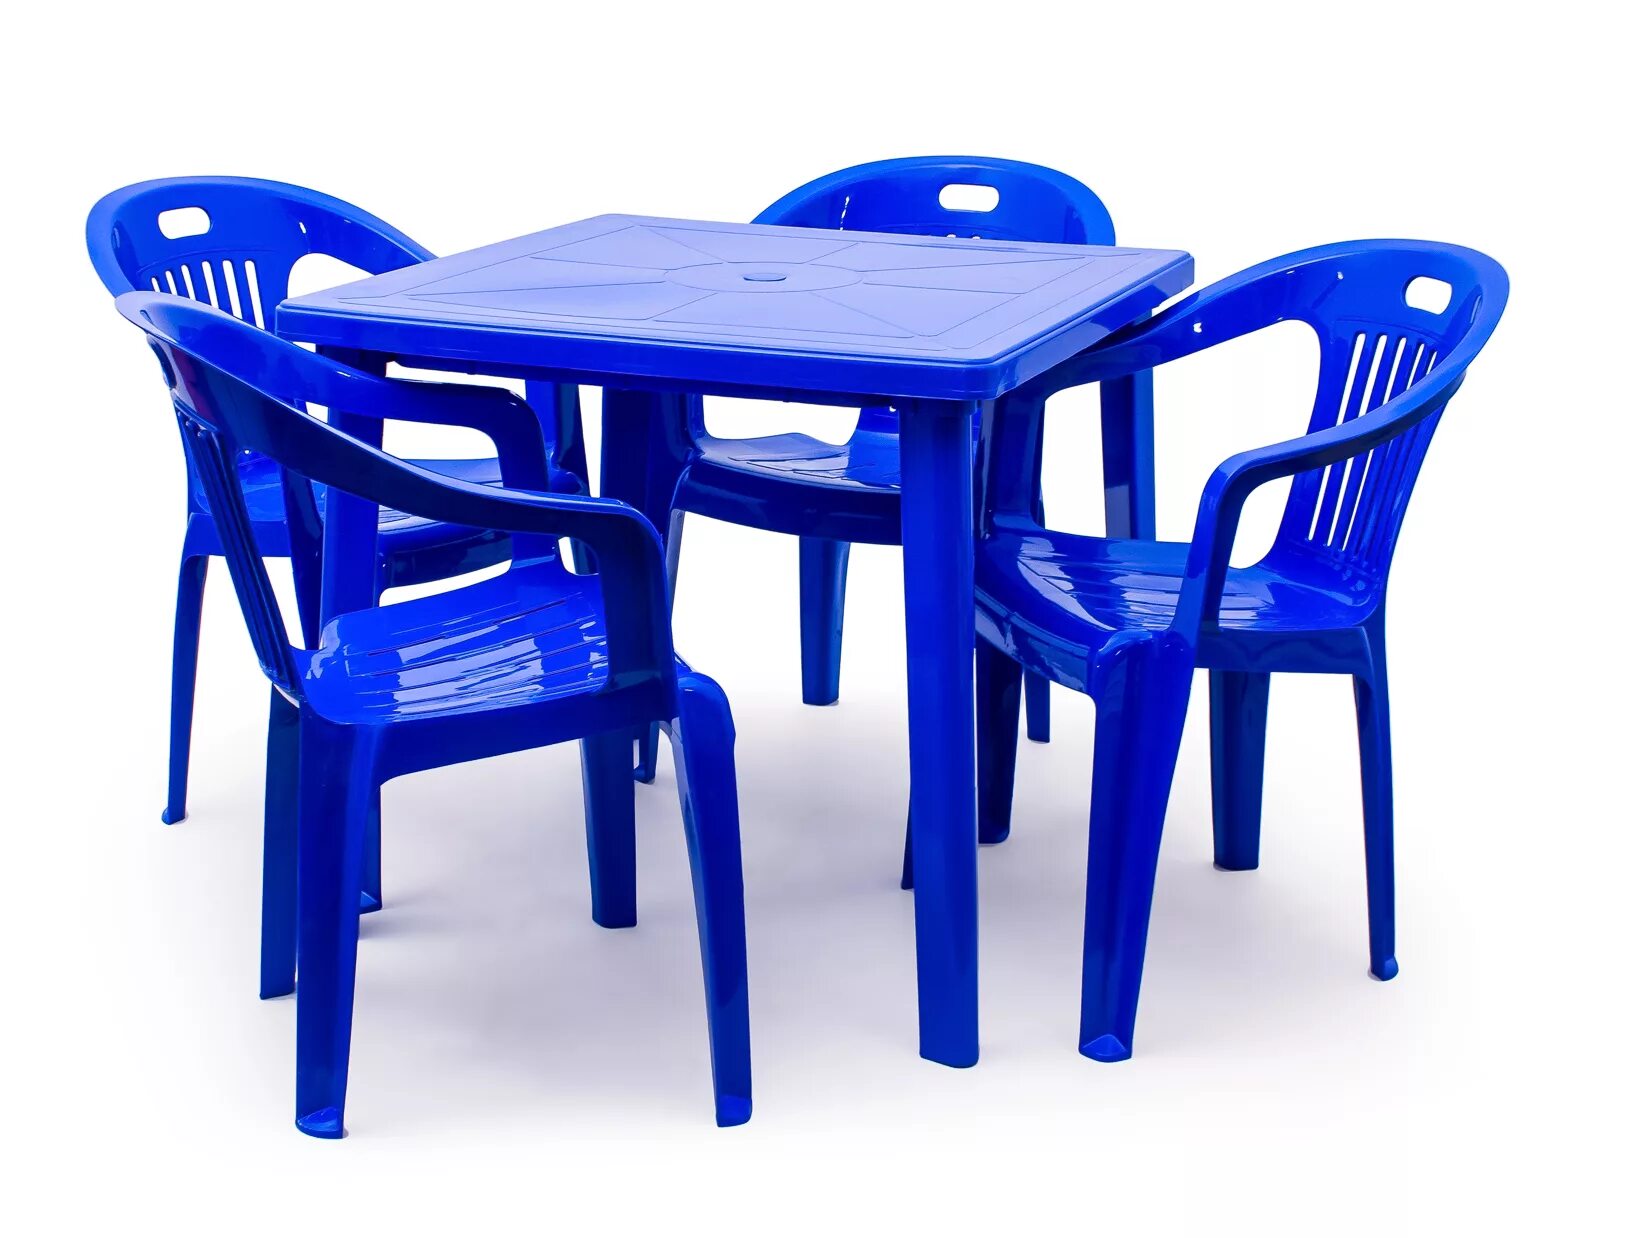 Стол стандарт пластик групп квадратный 800х800. Комплект пластиковой мебели (стол Нирвана + 8 кресел Флинт). Кресло стандарт пластик комфорт-1. Набор мебели 4пр стол(бук) + 4стула(морская волна) Veno.